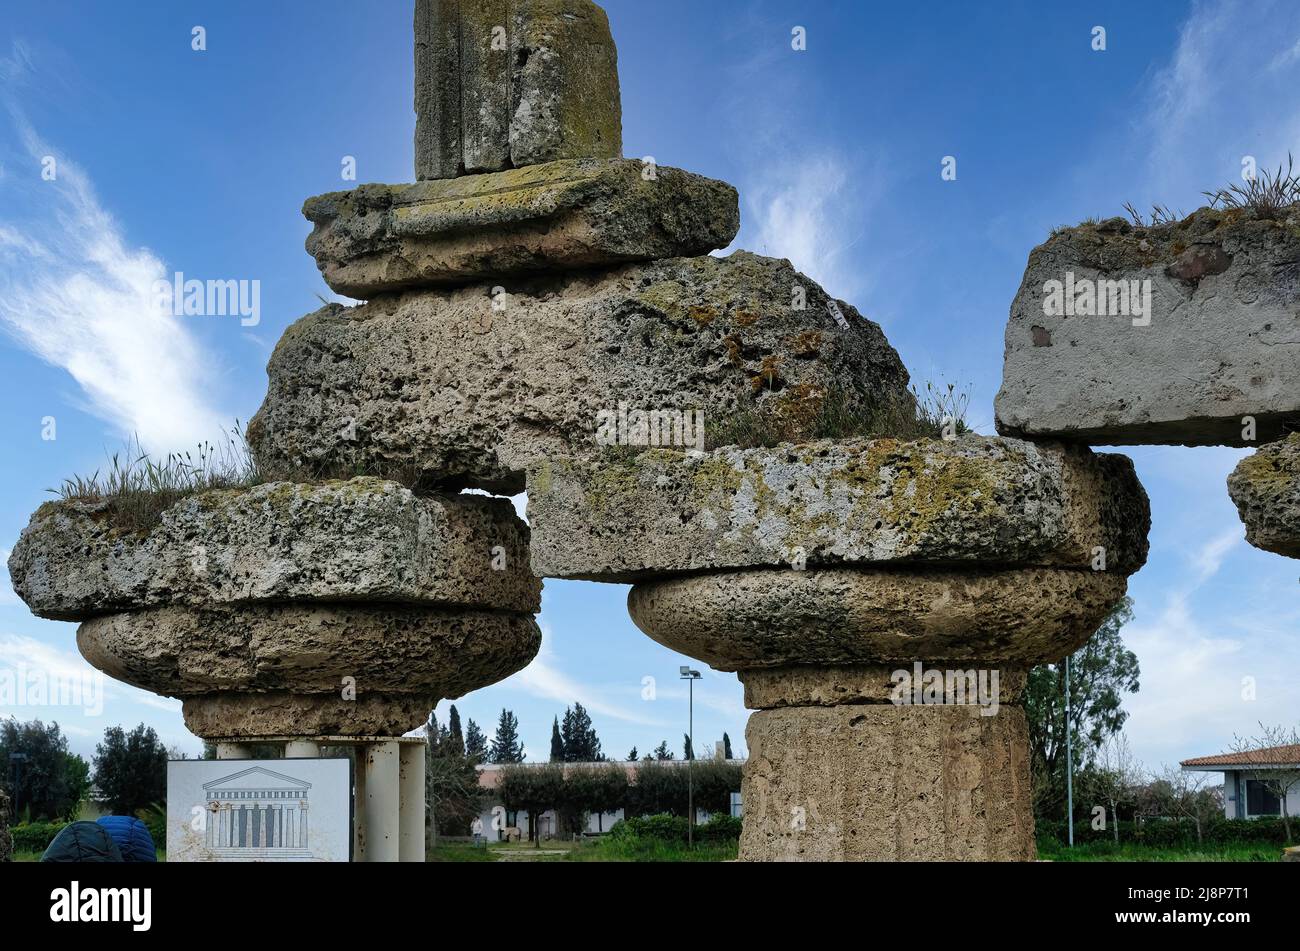 Il Parco Archeologico di Metaponto in Basilicata, antica colonia di Magna Grecia poi conquistata dai Romani nel 3rd a.C. Foto Stock